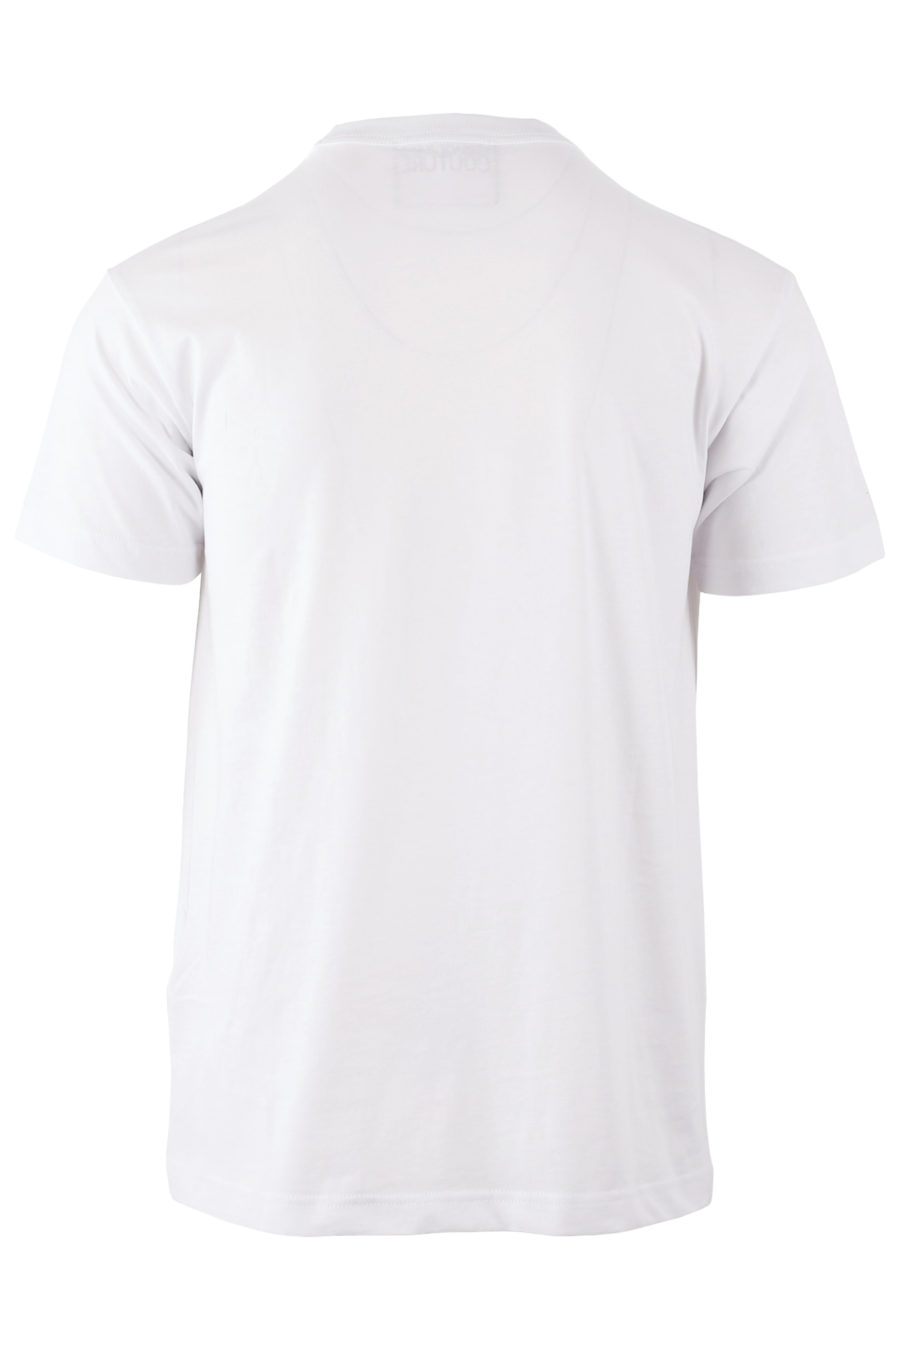 Camiseta blanca con logotipo de colores - 9cb1607c89a7c6ee1bcd9f0763d64c2a7c4e0830